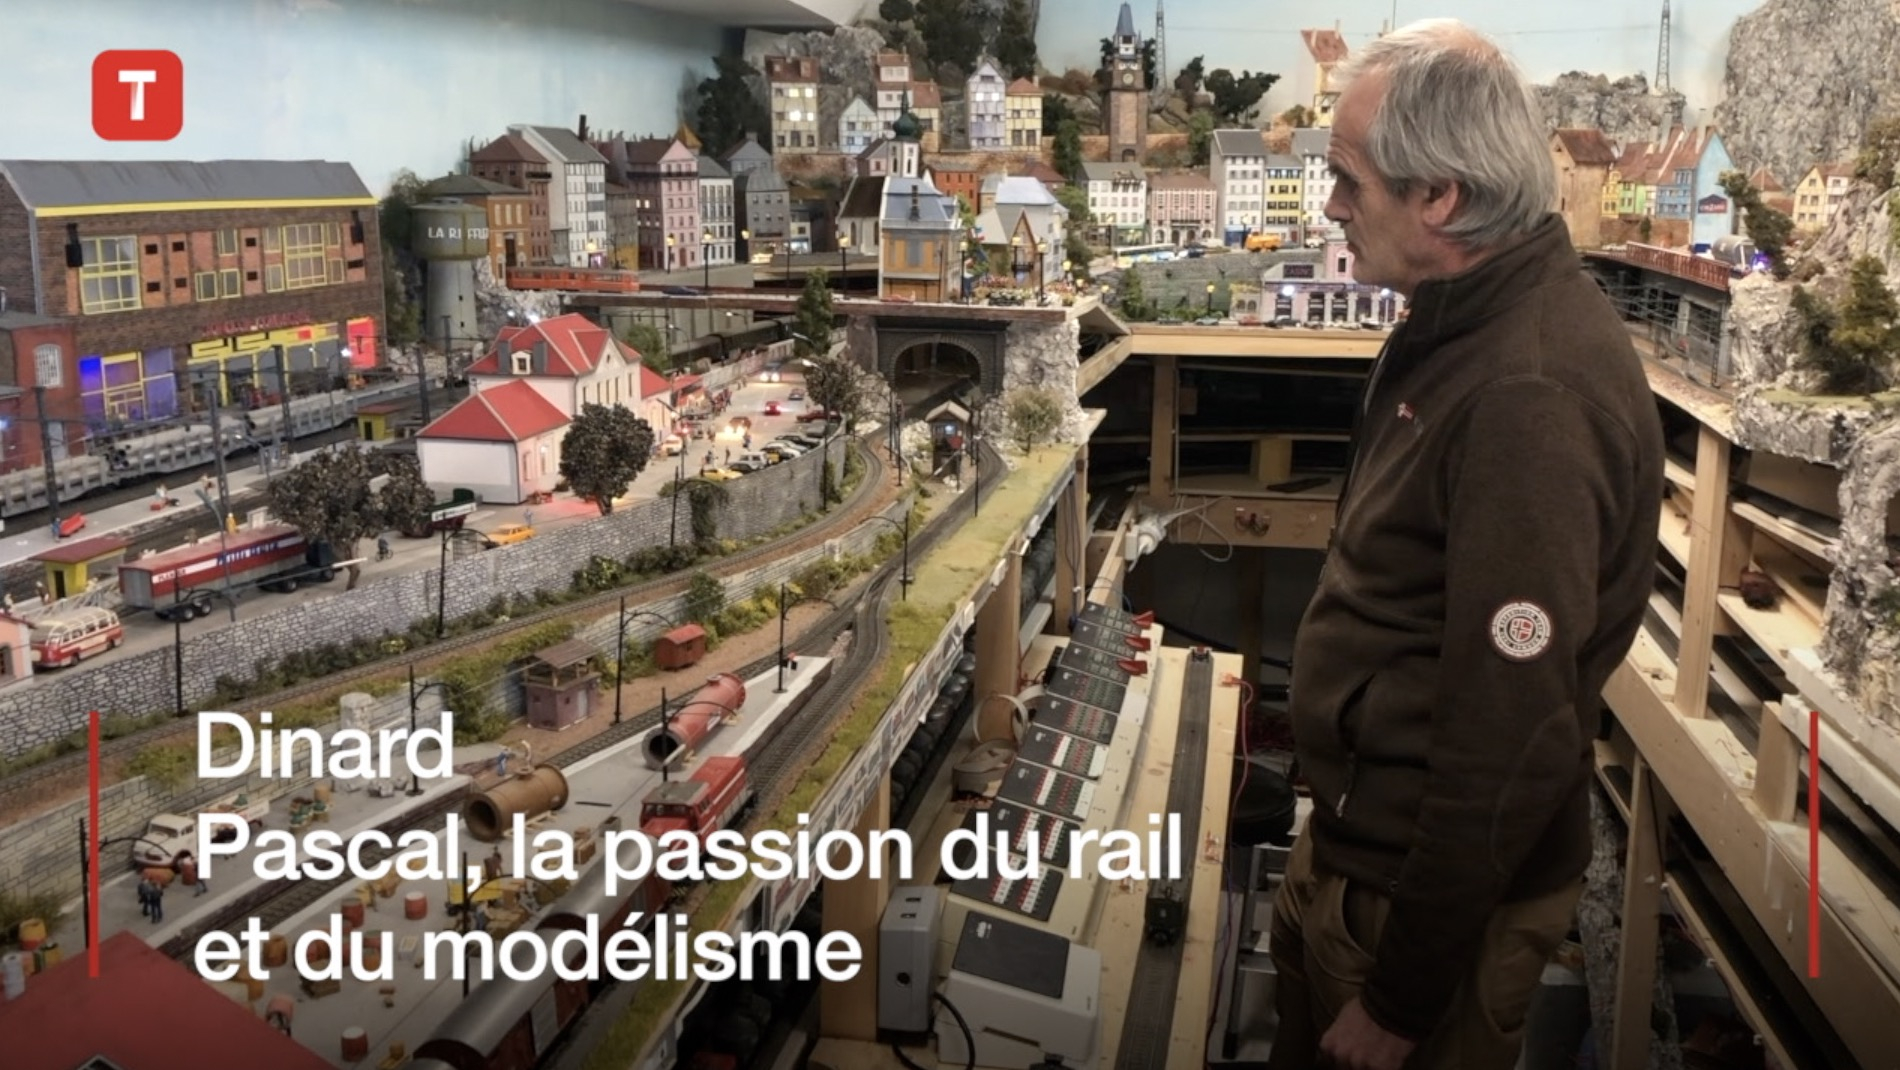 Dinard. Pascal, la passion du rail et du modélisme (Le Télégramme)